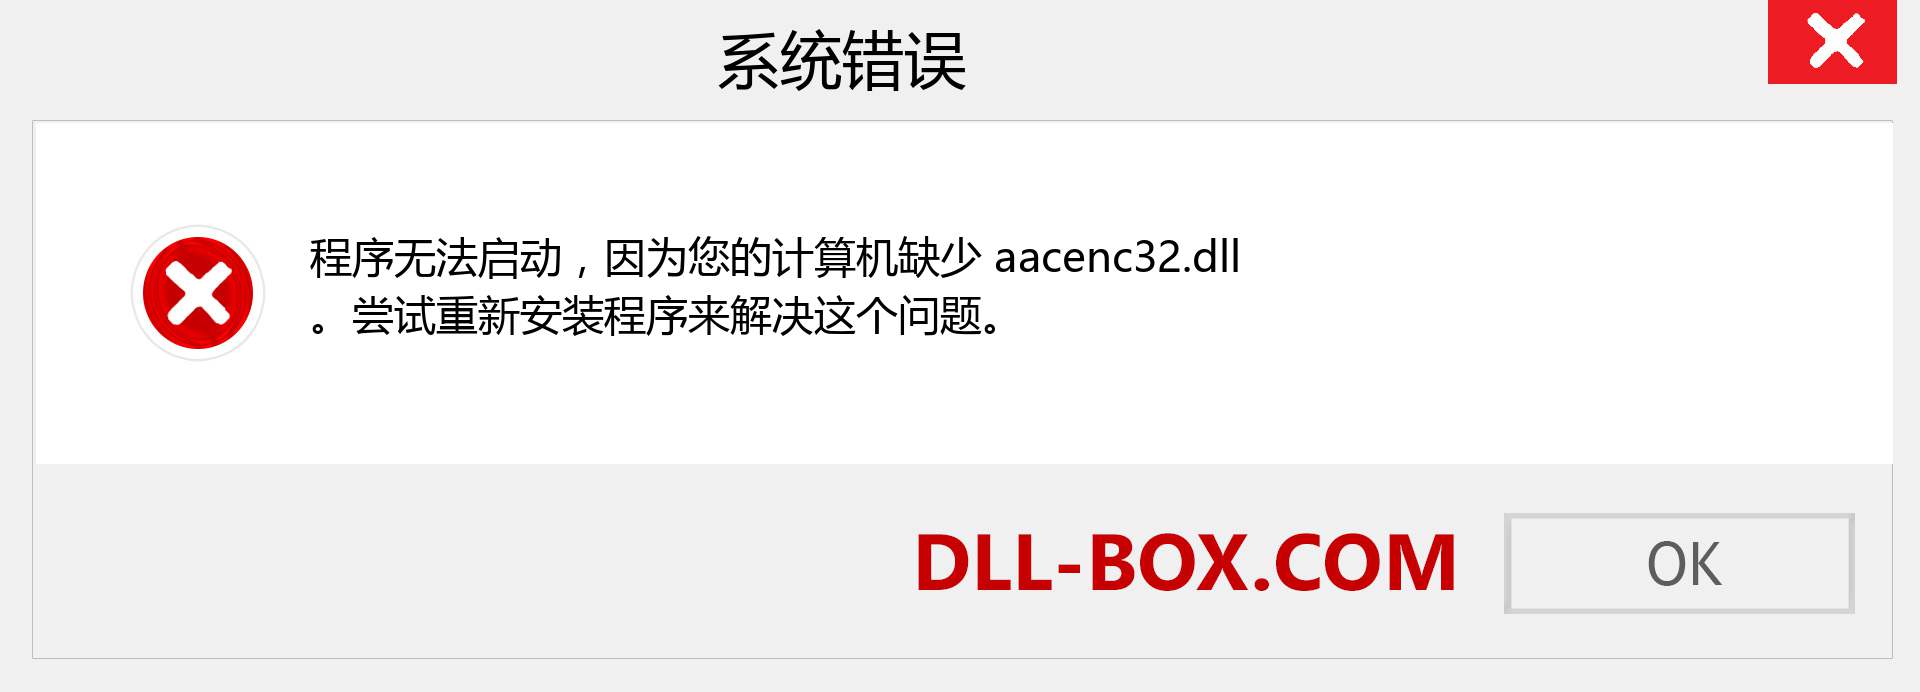 aacenc32.dll 文件丢失？。 适用于 Windows 7、8、10 的下载 - 修复 Windows、照片、图像上的 aacenc32 dll 丢失错误